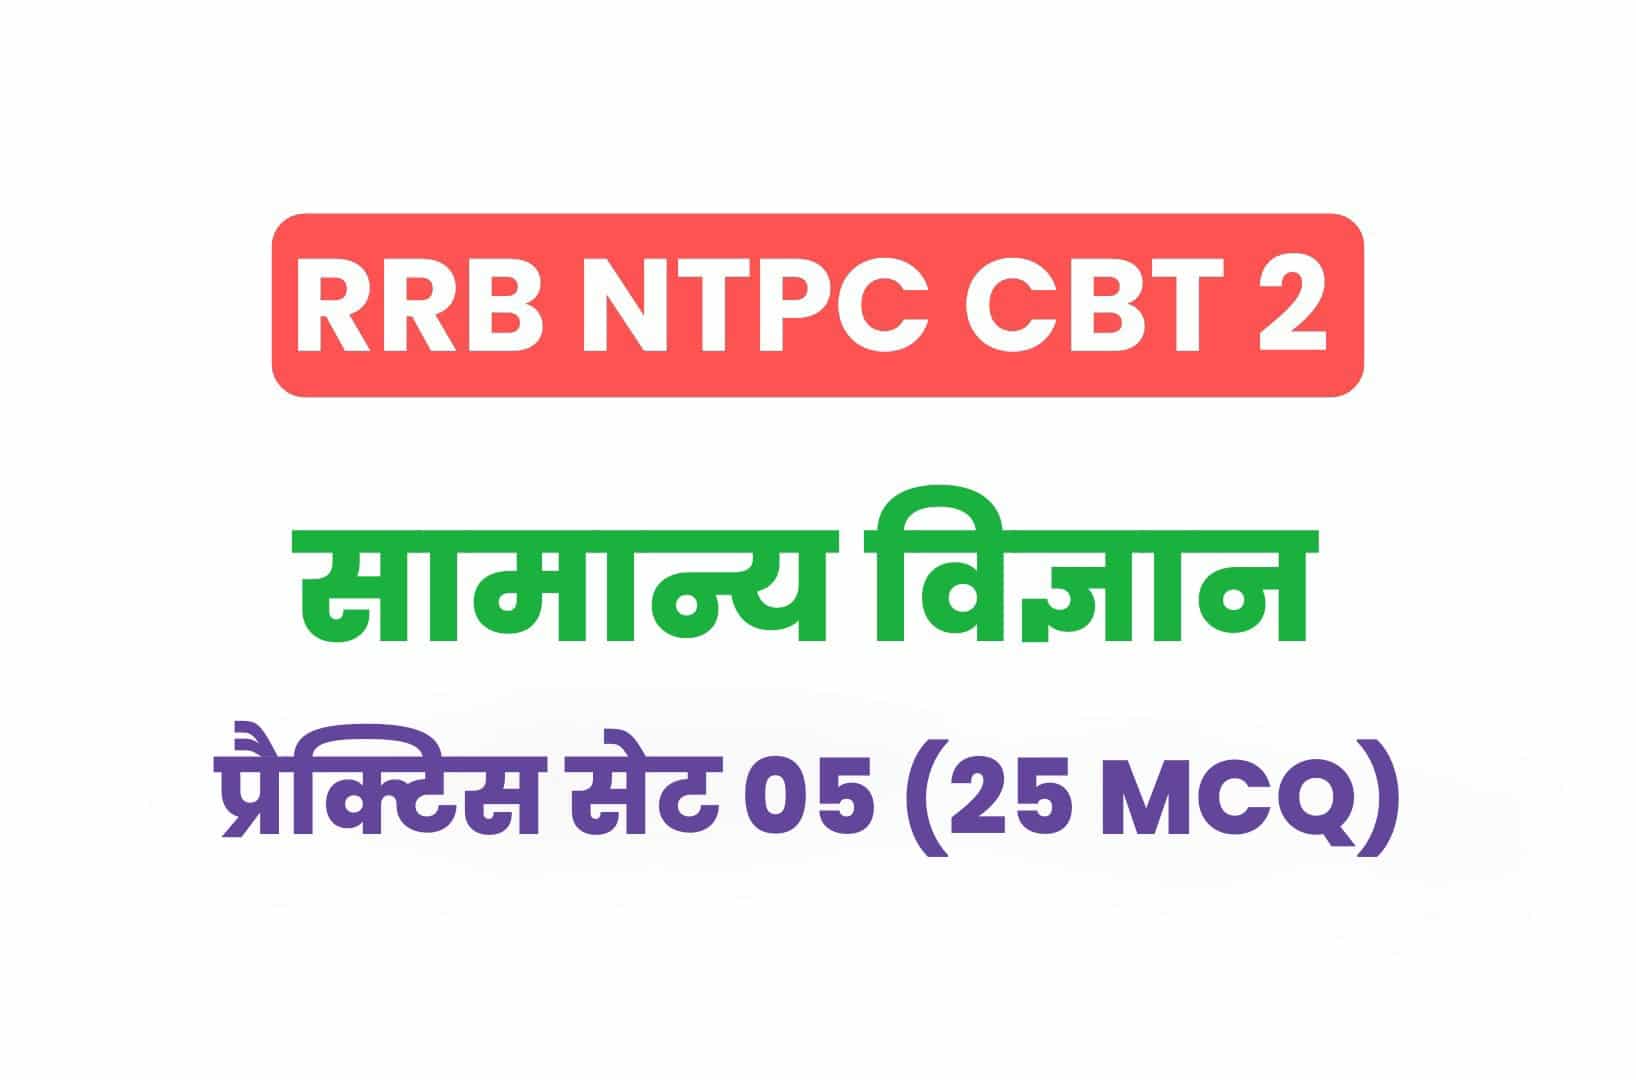 RRB NTPC CBT 2 Science प्रैक्टिस सेट 05: सामान्य विज्ञान के इन महत्वपूर्ण प्रश्नों का करें अध्ययन